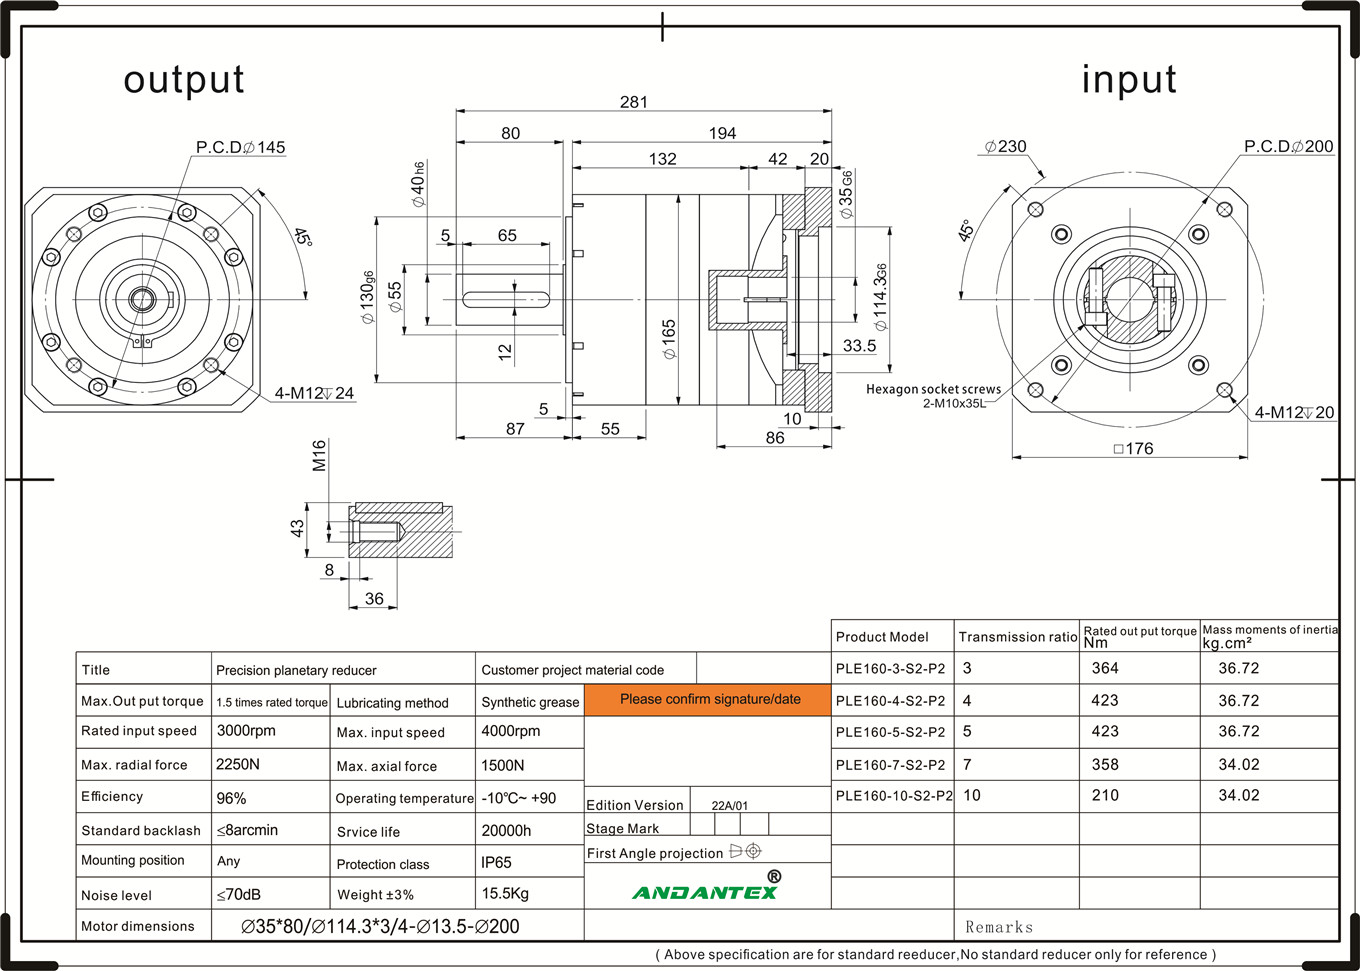 ANDANTEX PLE160-10-S2-P2 პლანეტარული სიჩქარის შემამცირებელი, რომელიც გამოიყენება ქუქი-მანქანების მოწყობილობაში-01